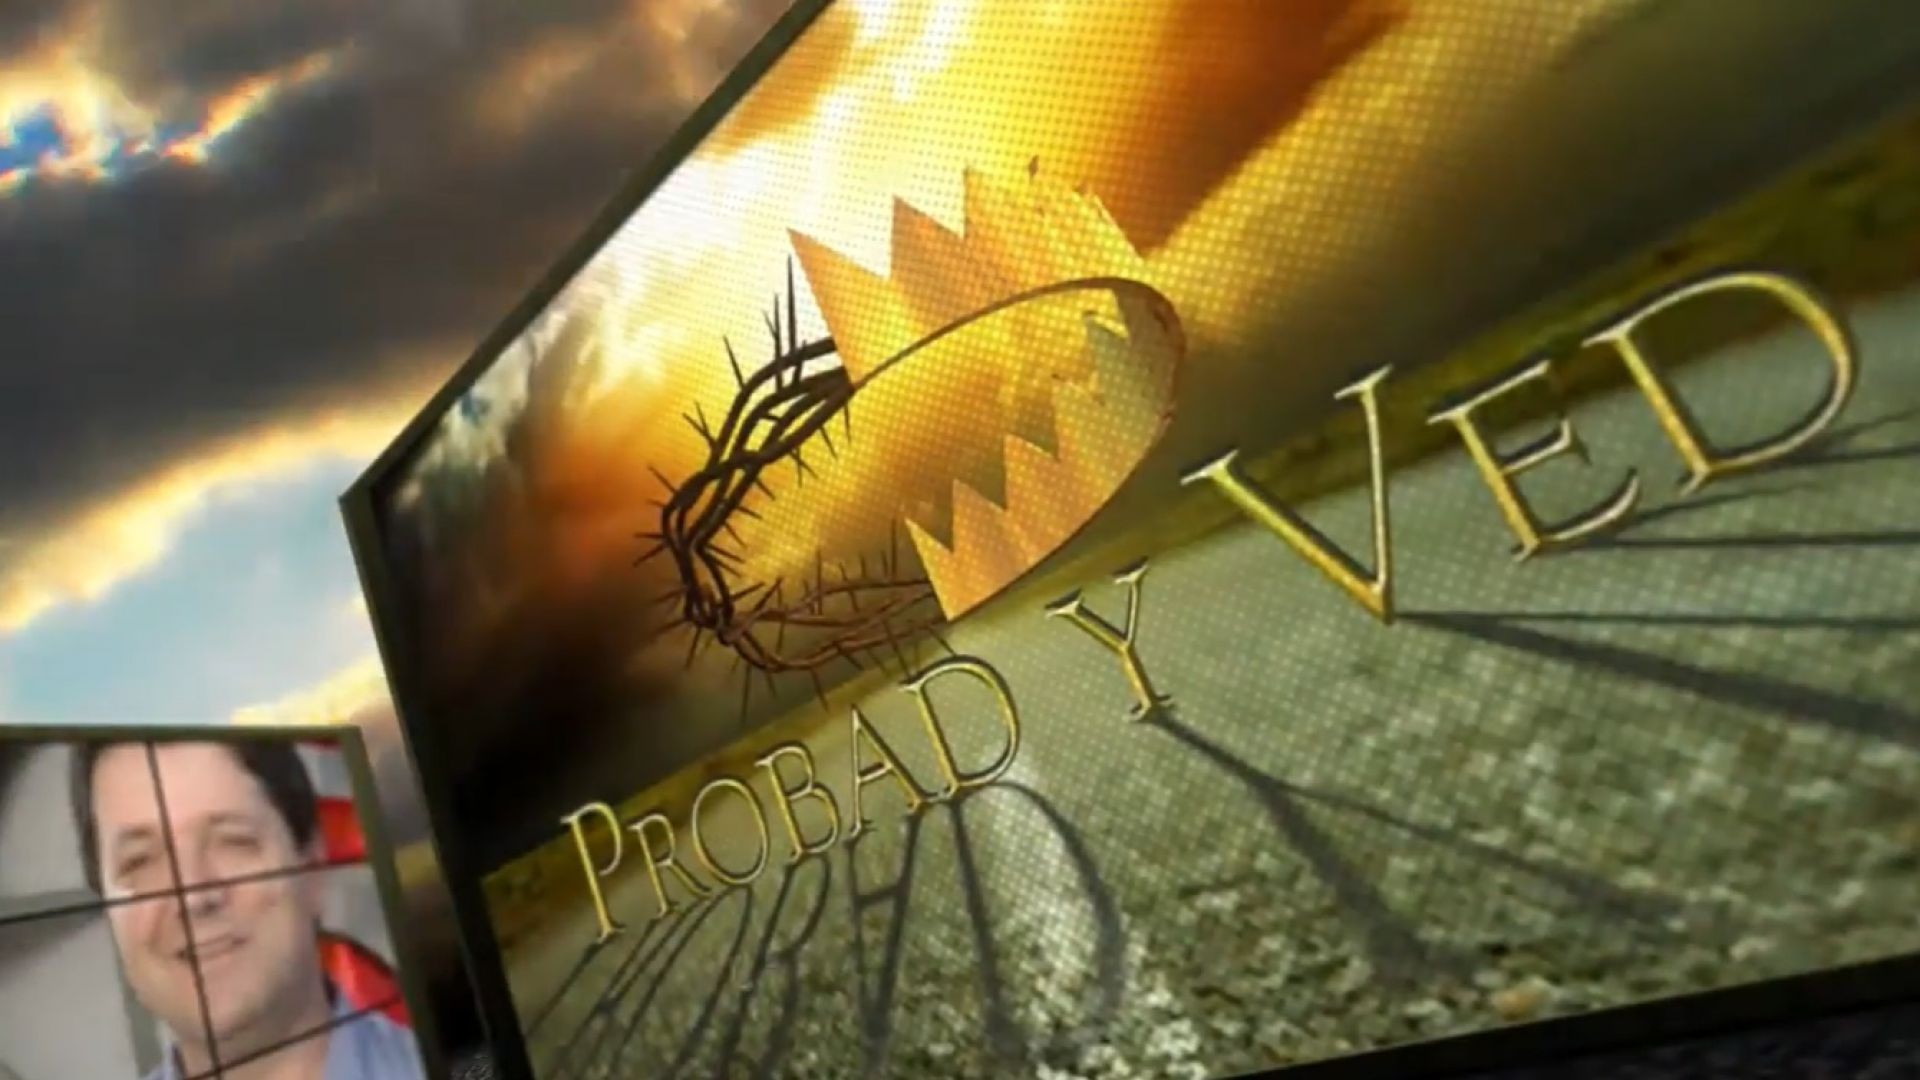 ⁣Probad y Ved 2012 - Pactos de fe